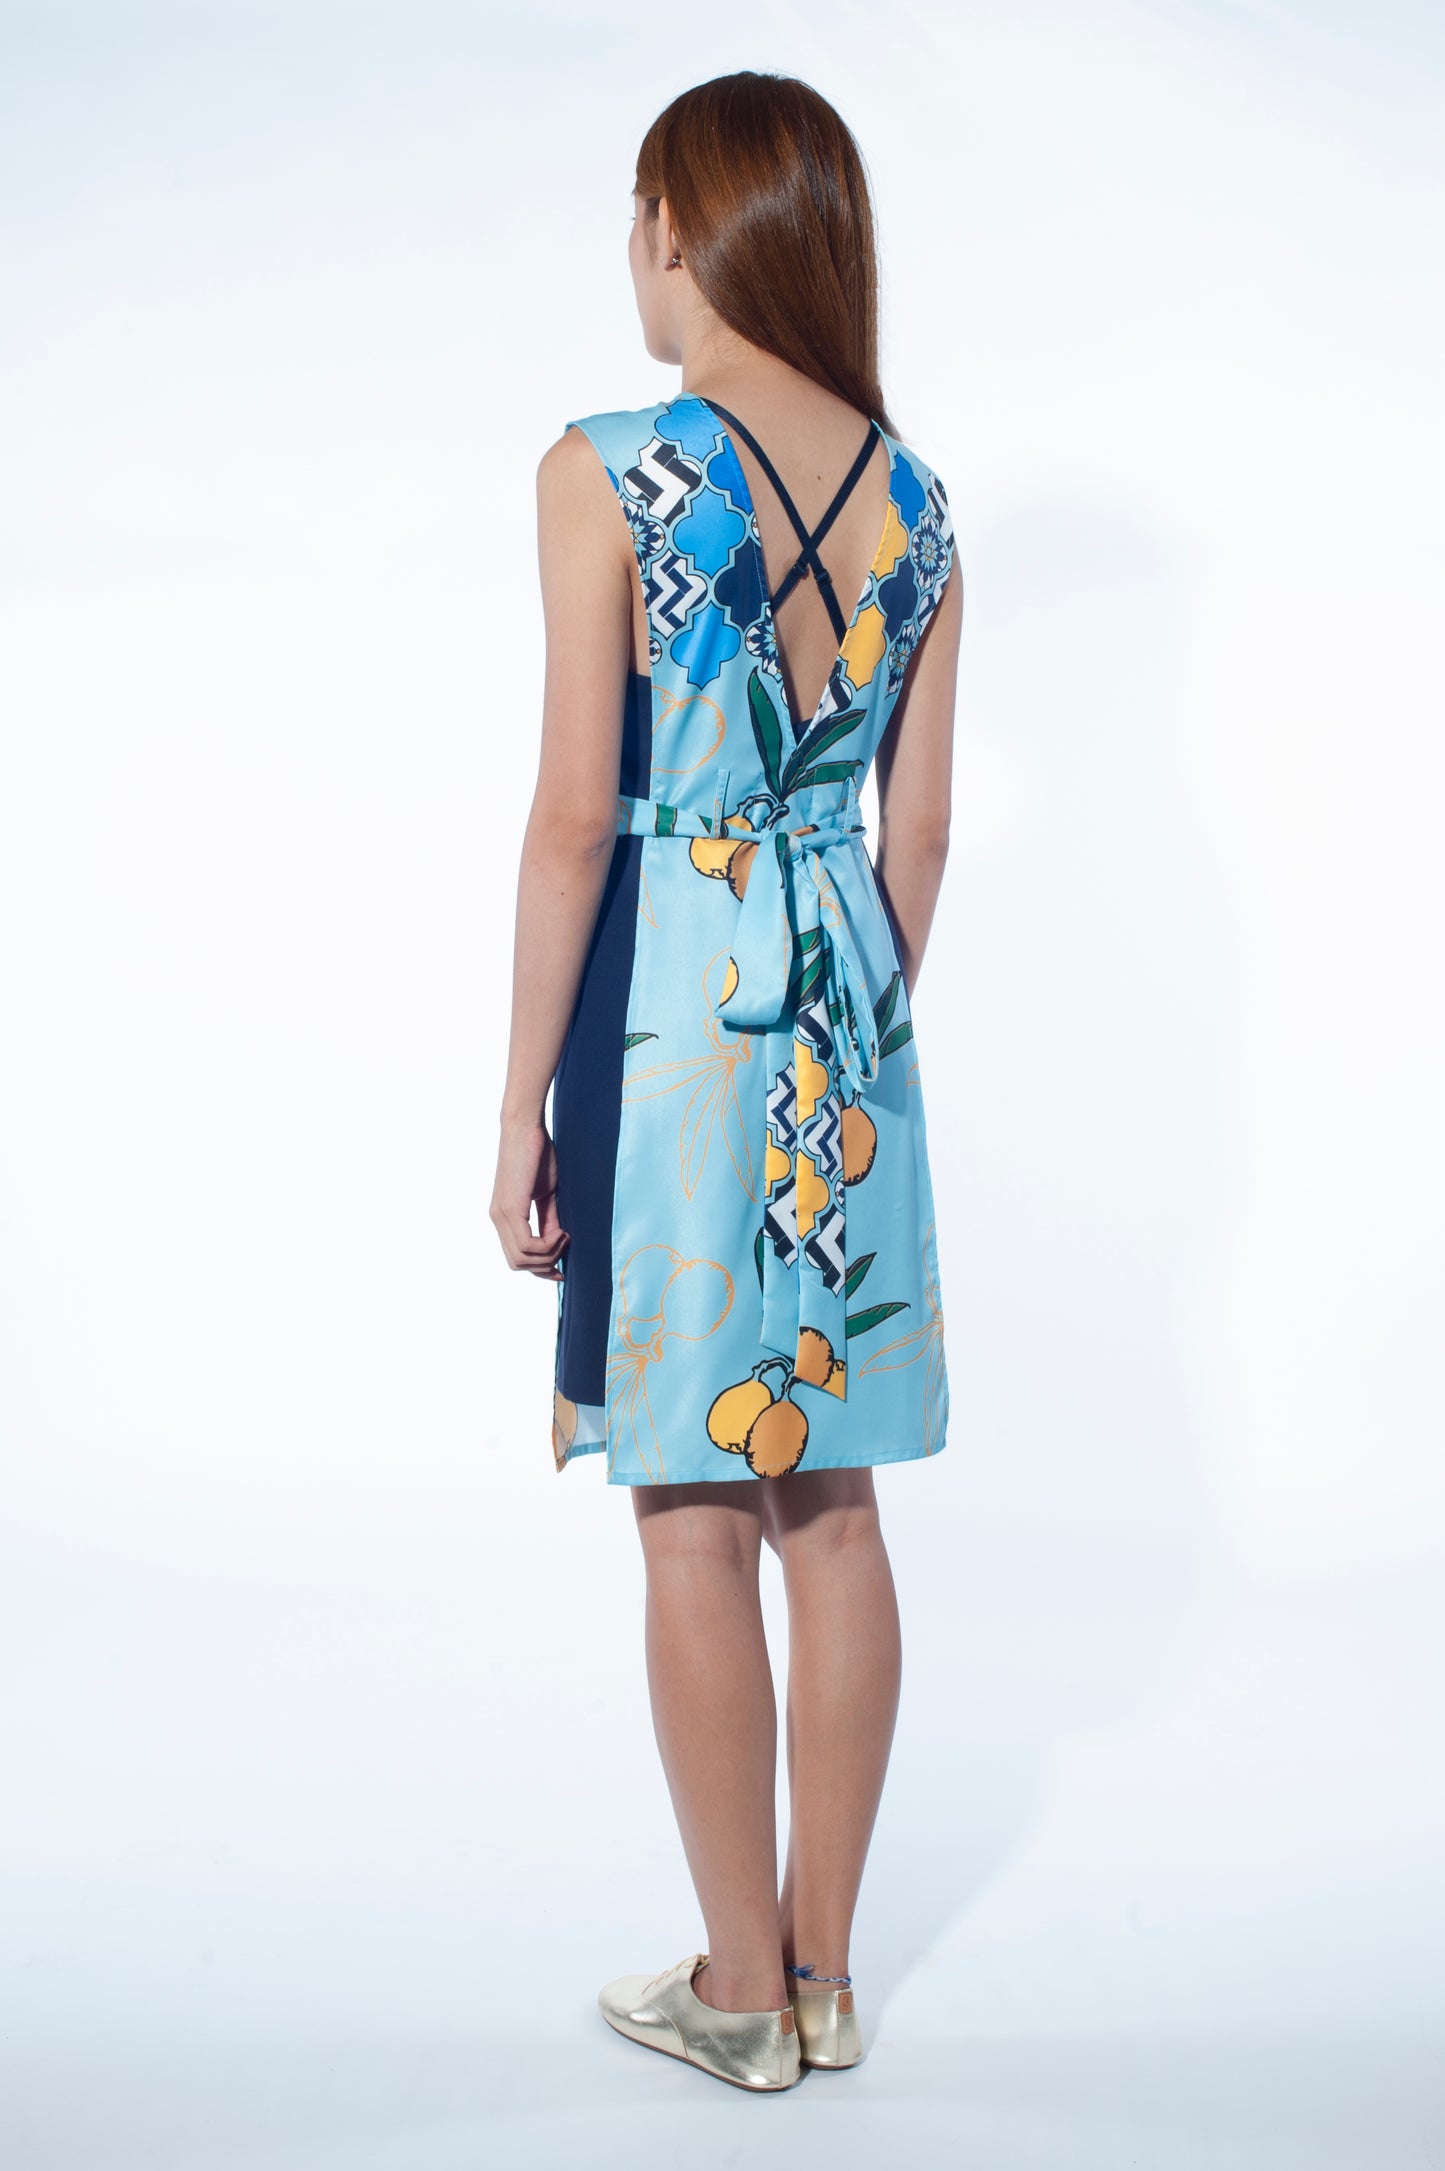 Apron Overlay Dress (Chefchaouen Print)